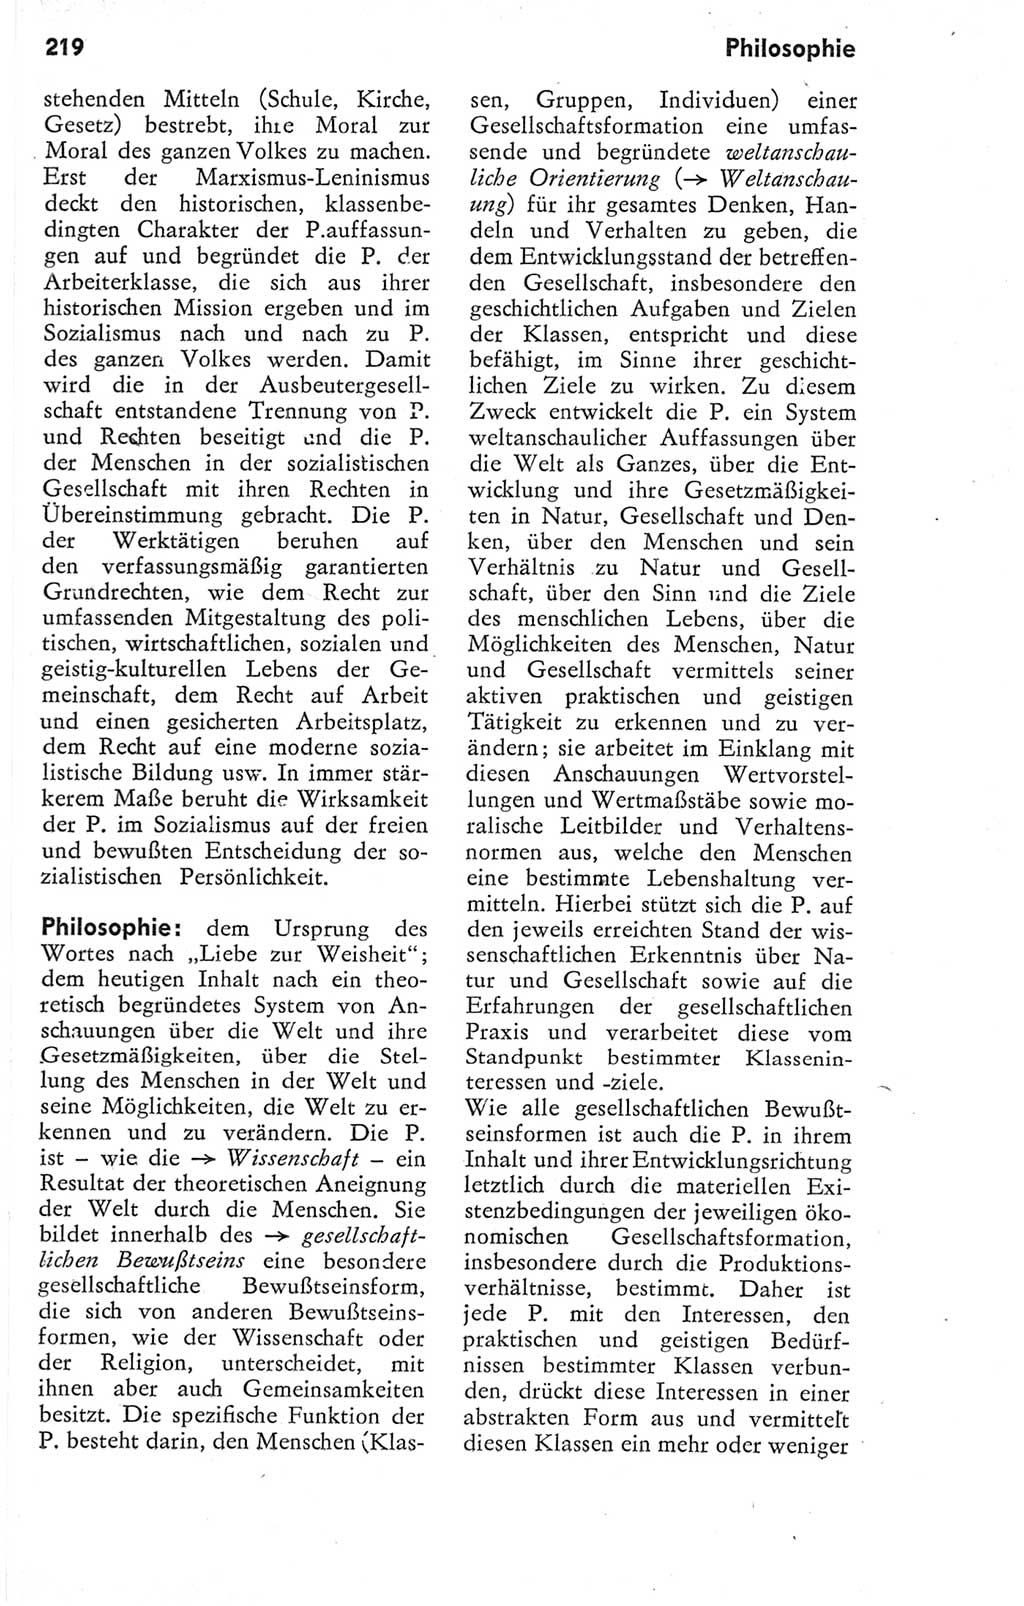 Kleines Wörterbuch der marxistisch-leninistischen Philosophie [Deutsche Demokratische Republik (DDR)] 1974, Seite 219 (Kl. Wb. ML Phil. DDR 1974, S. 219)